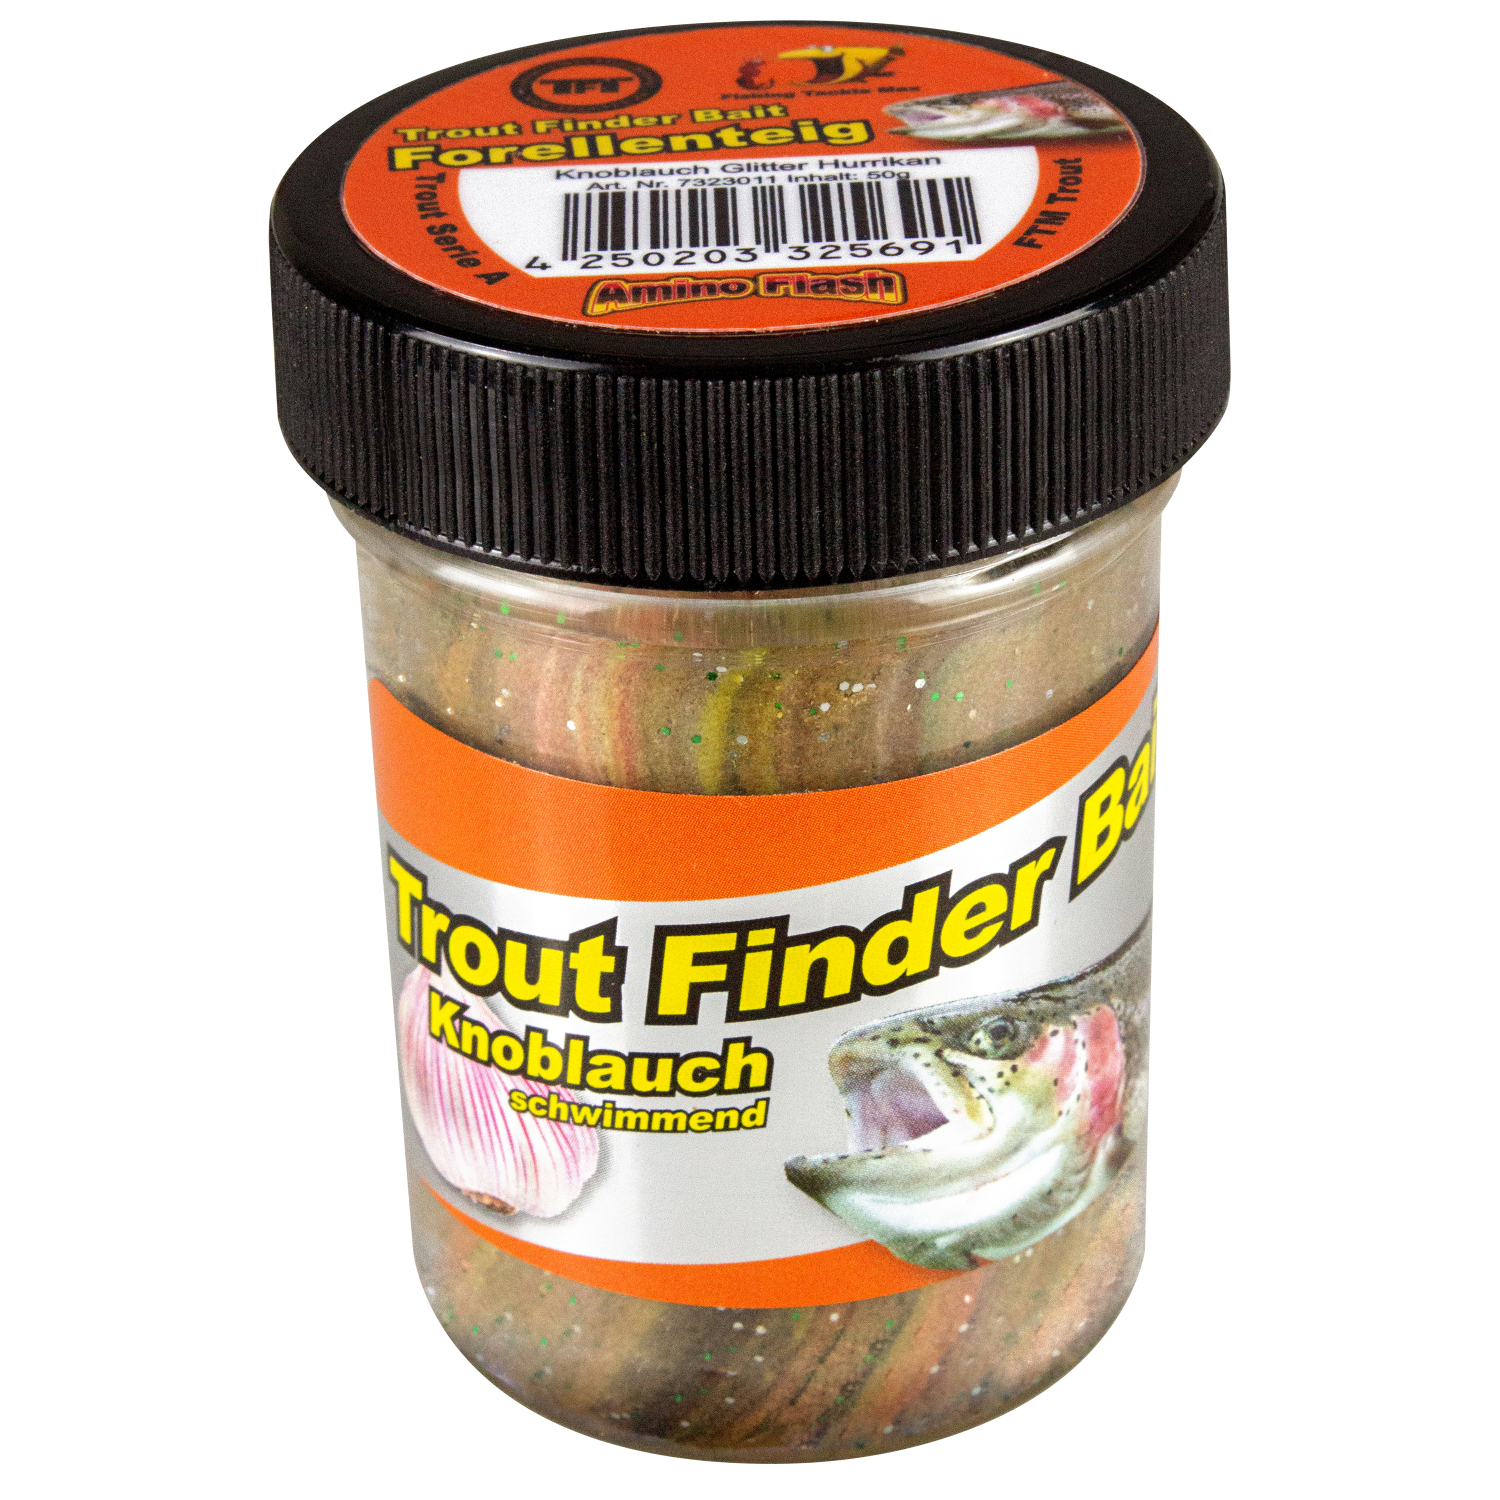 FTM Forellenteig Trout Finder Bait schwimmend (Hurrican, Knoblauch) 